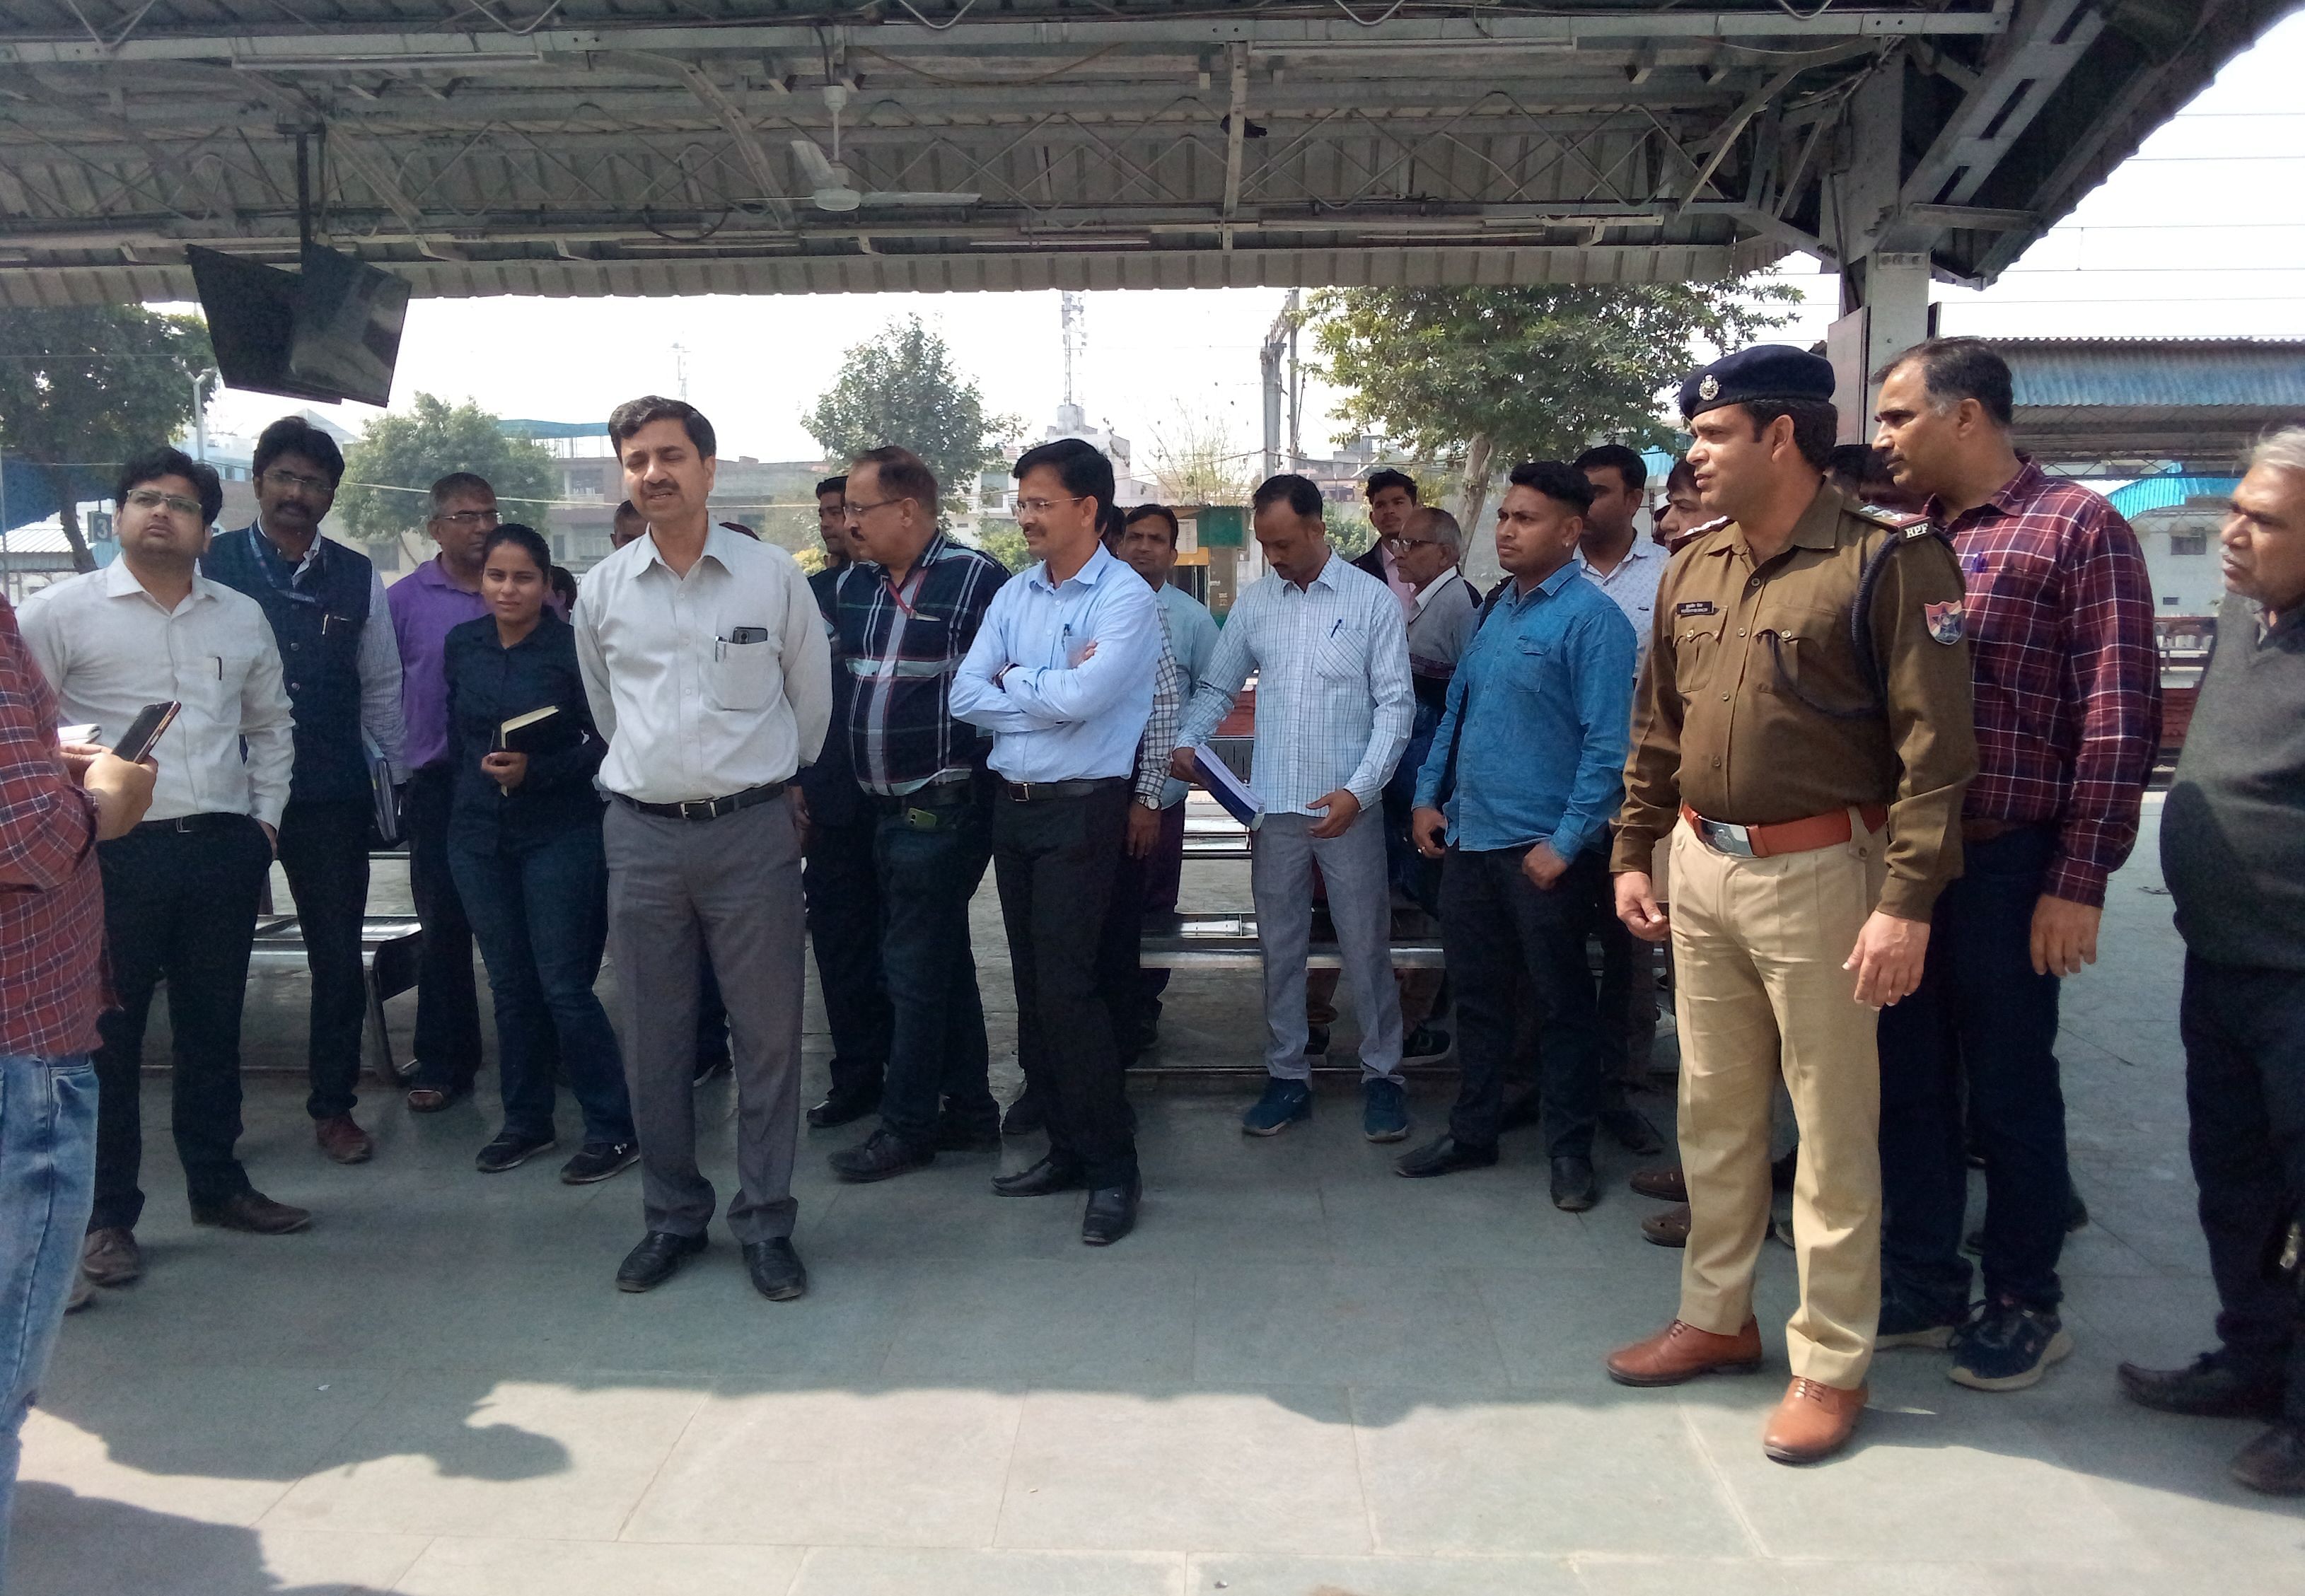 फोटो 05 - सोनीपत स्टेशन पर निरीक्षण के दौरान अधिकारियों से व्यवस्थाओं की जानकारी लेते दिल्ली मं